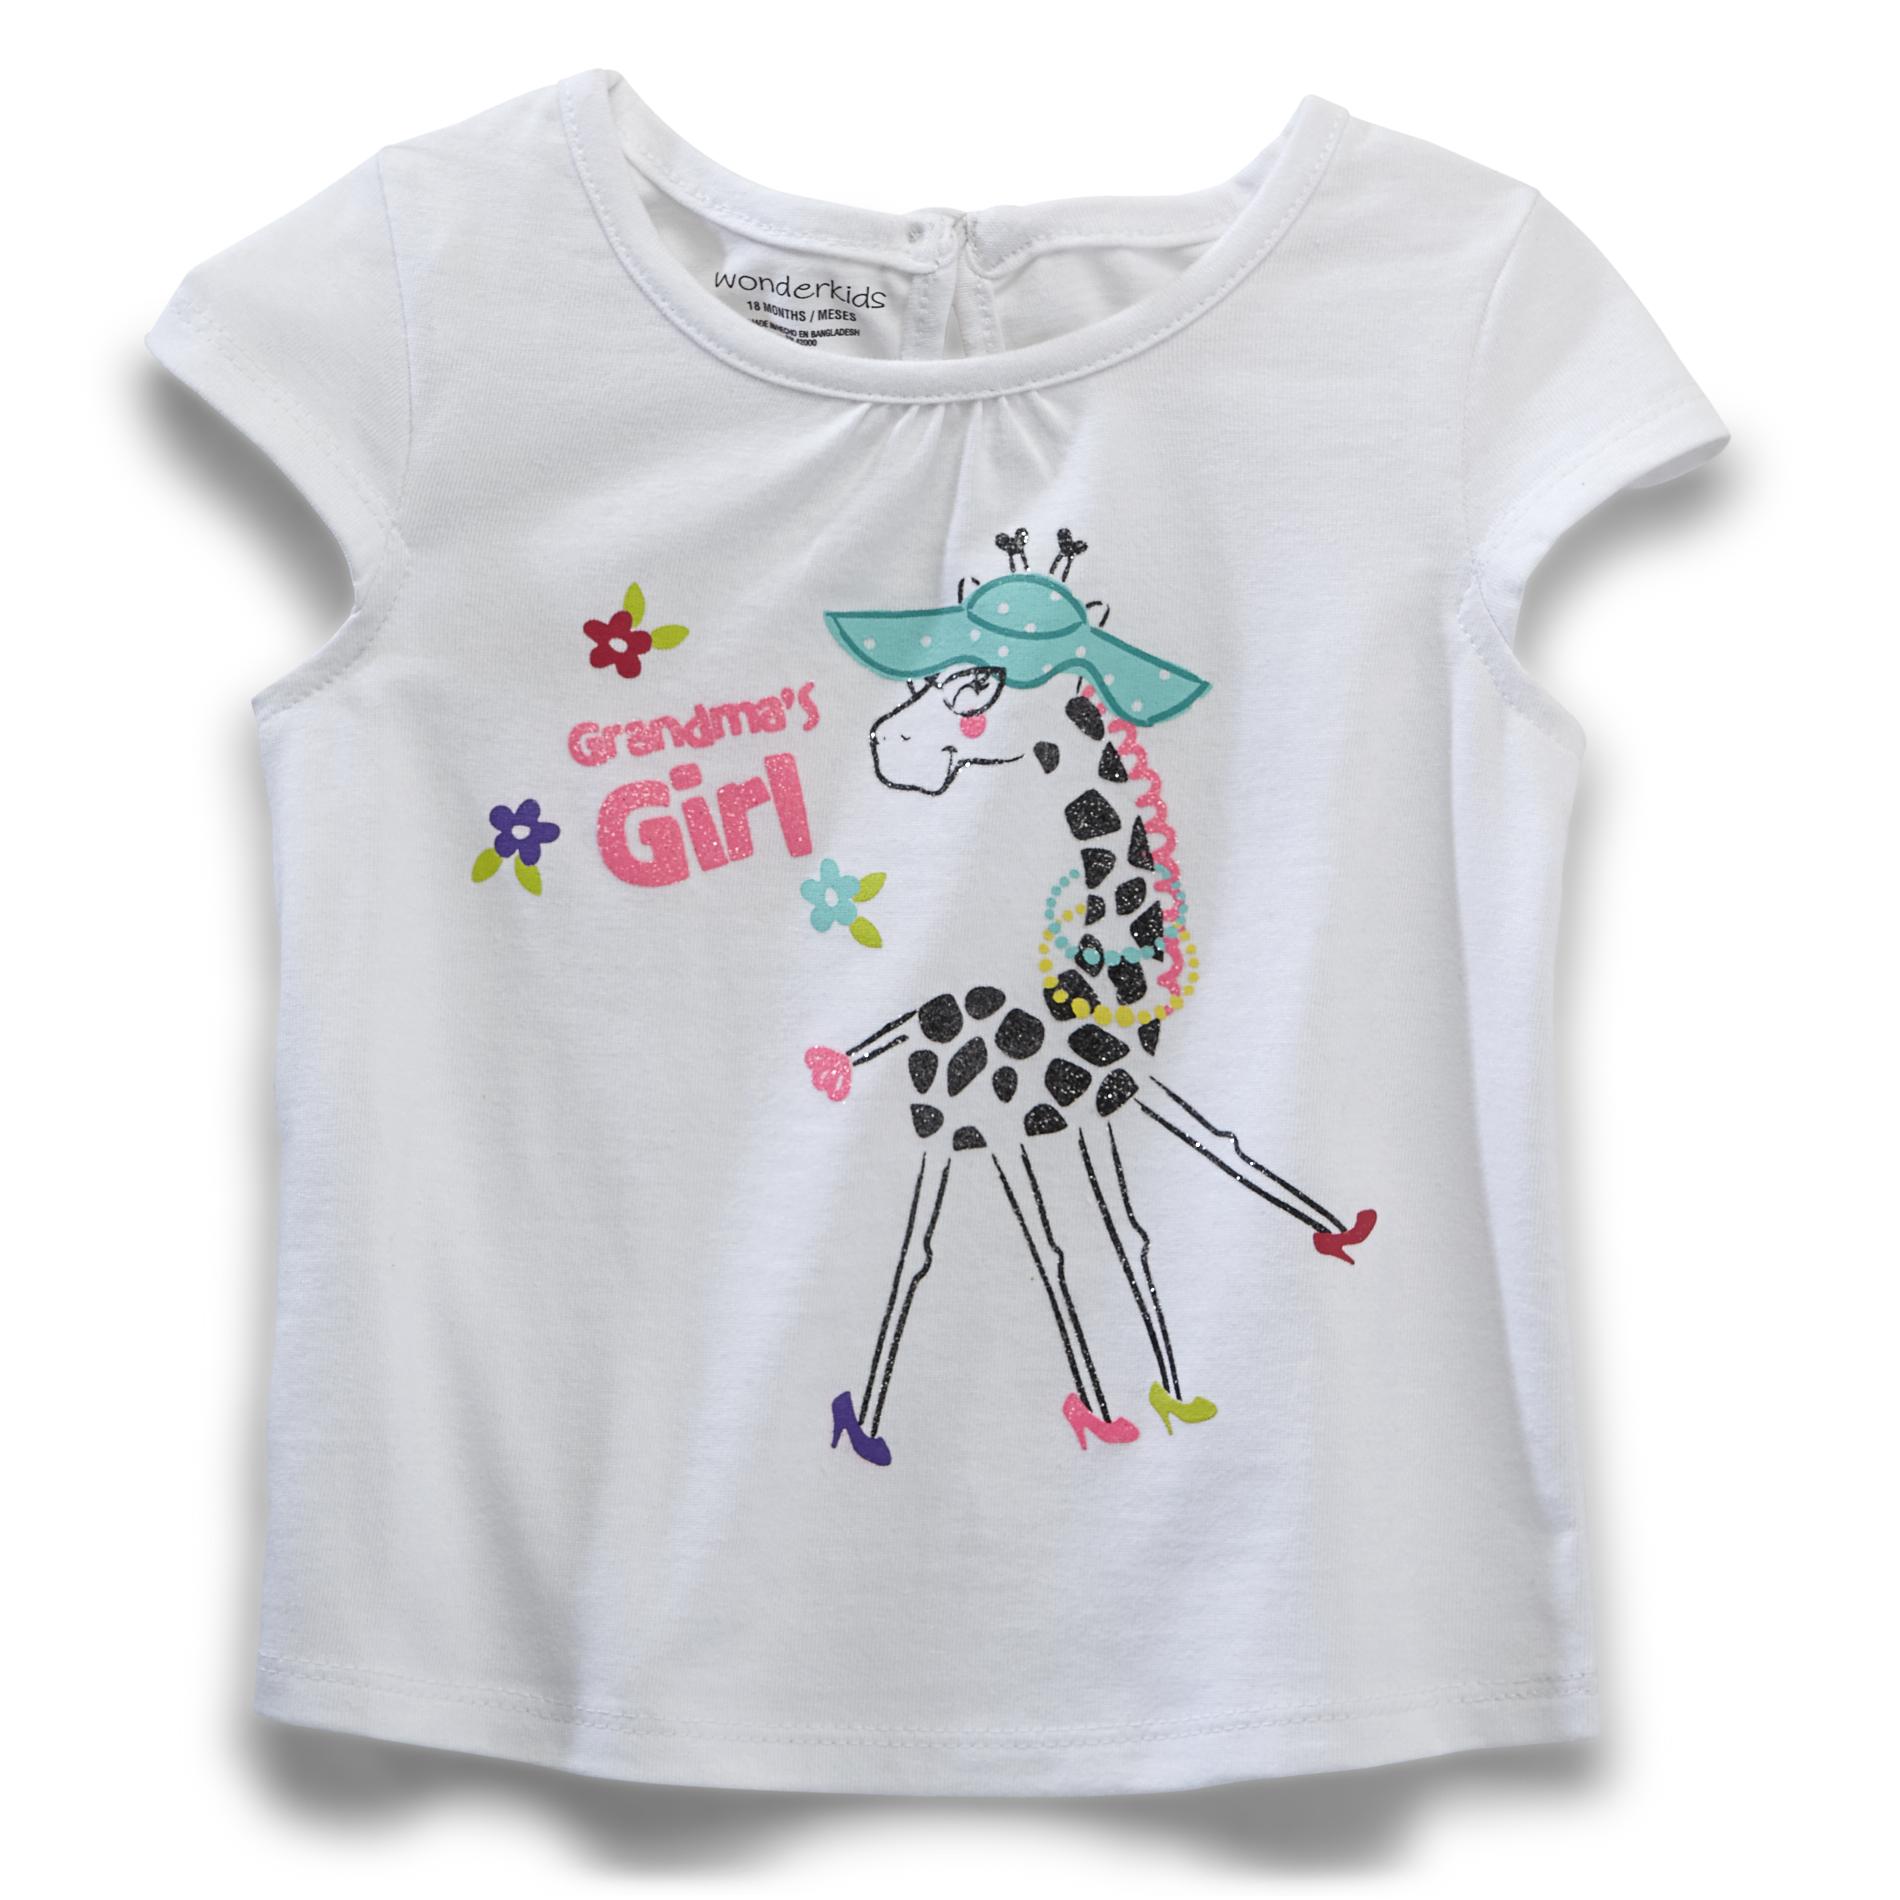 WonderKids Infant & Toddler Girl's Graphic T-Shirt - Grandma's Girl